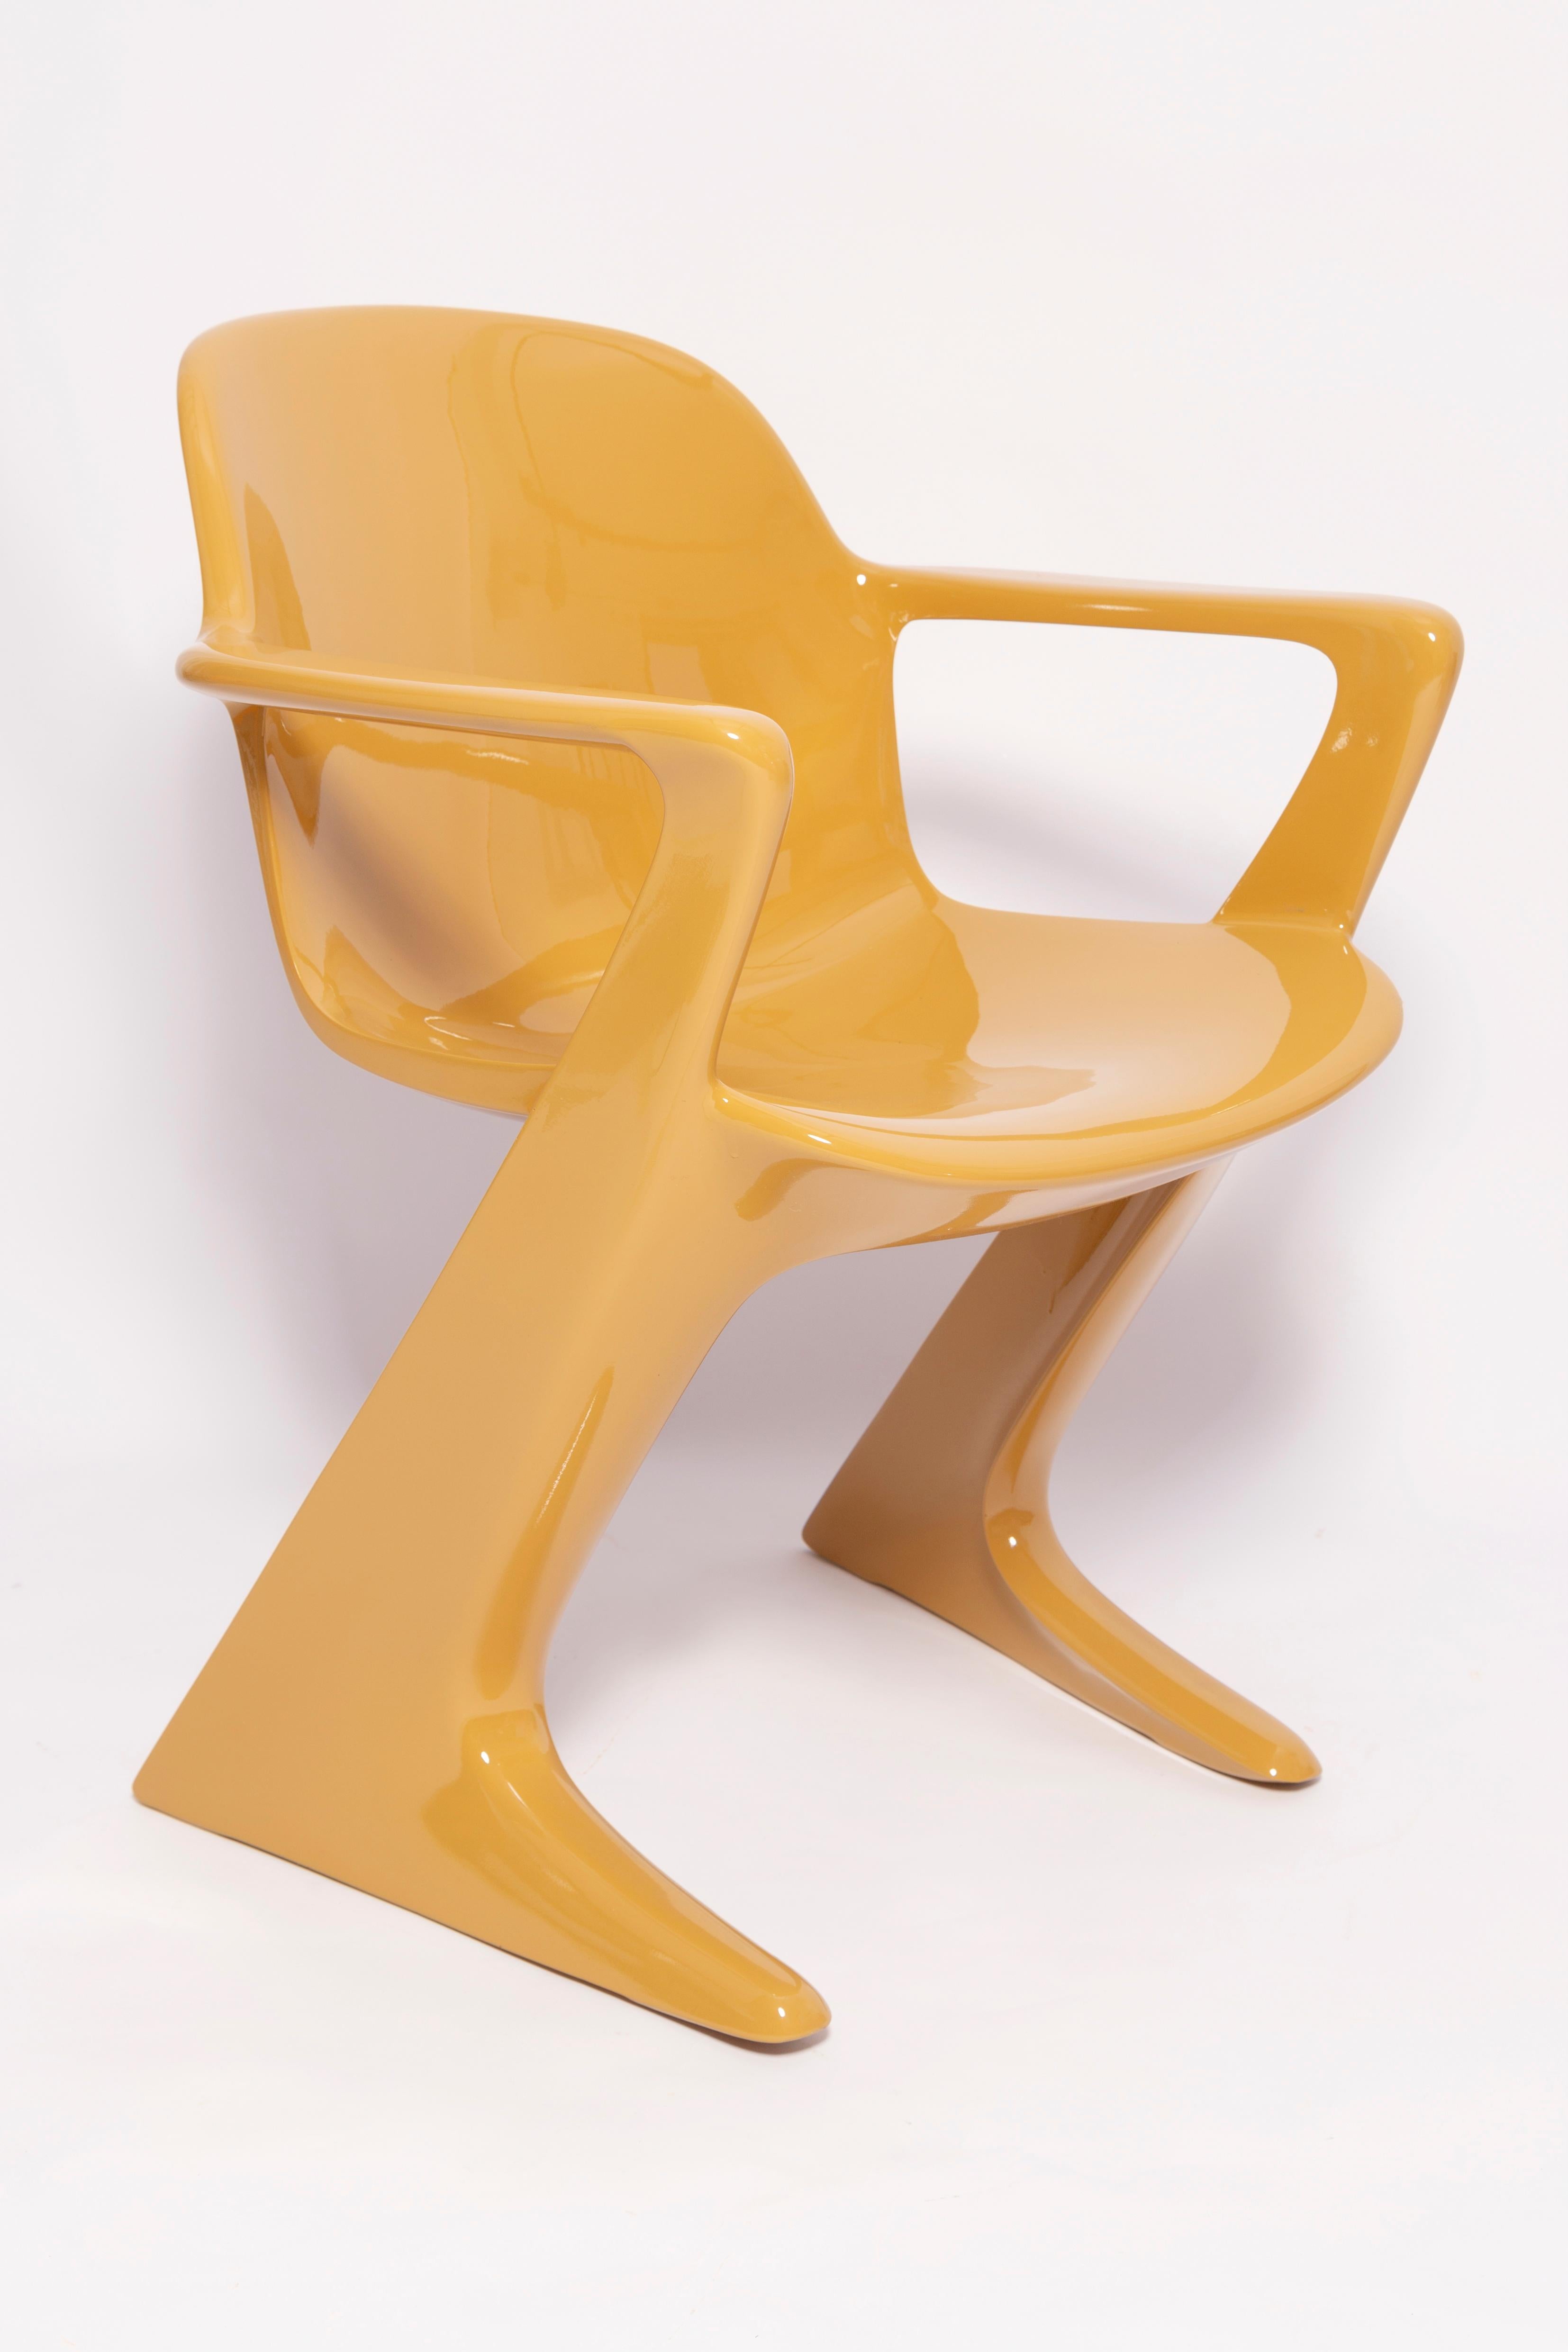 Dieses Modell wird als Z-Stuhl bezeichnet. 1968 in der DDR von Ernst Moeckl und Siegfried Mehl entworfen, deutsche Version des Panton-Stuhls. Auch Känguru-Stuhl oder Variopur-Stuhl genannt. Produziert in Ostdeutschland.

Der z.stuhl, entworfen von